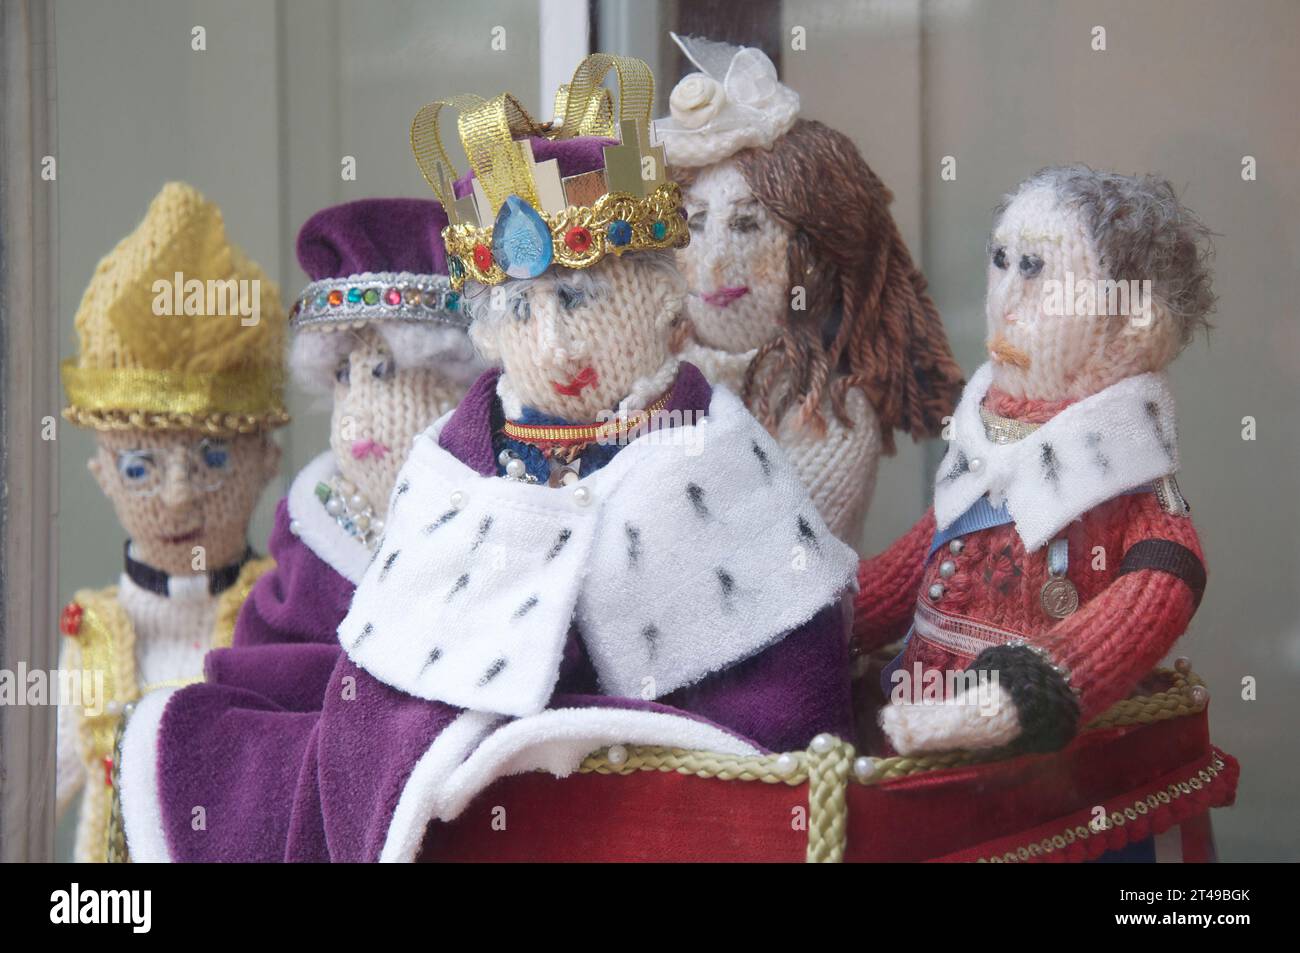 Bambole lavorate a maglia a mano di re Carlo III e membri della famiglia reale esposte, su un davanzale, per celebrare la sua incoronazione nel 2022. Inghilterra, Regno Unito. Foto Stock